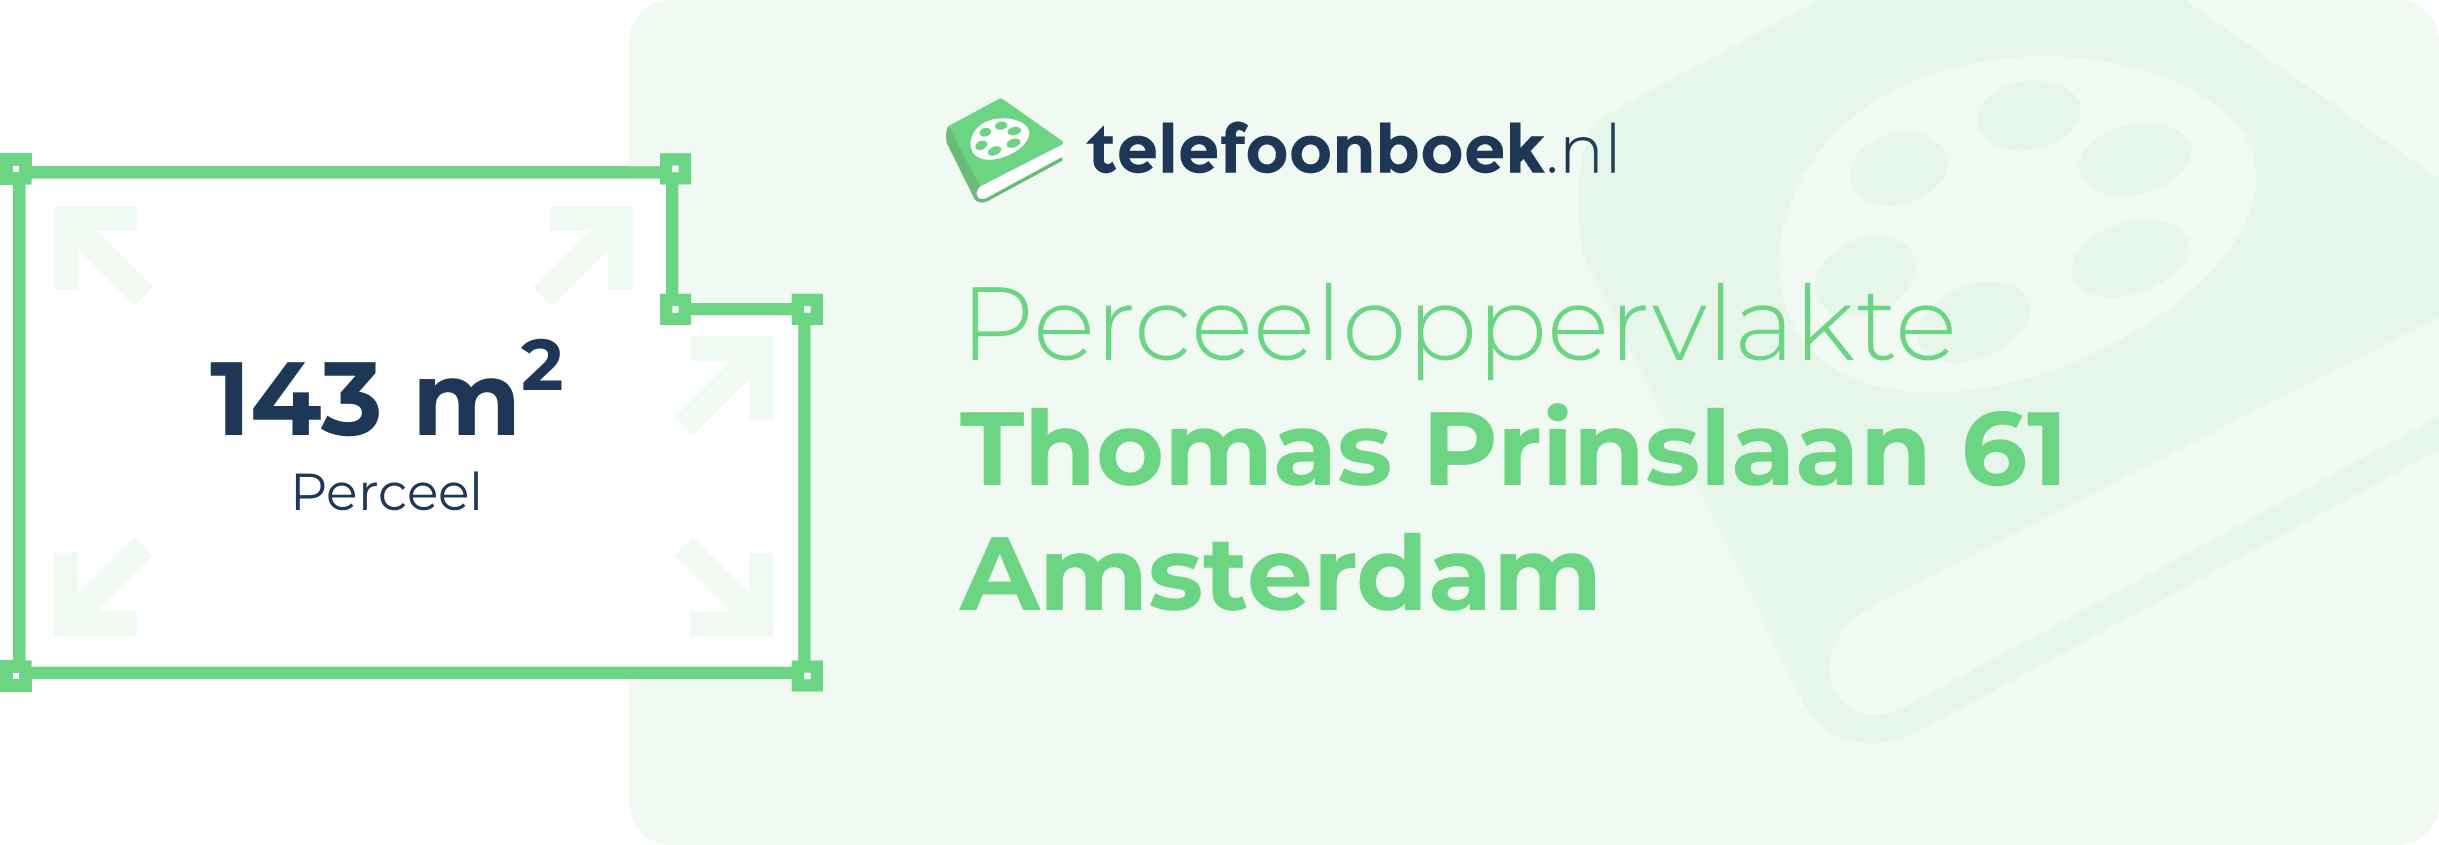 Perceeloppervlakte Thomas Prinslaan 61 Amsterdam